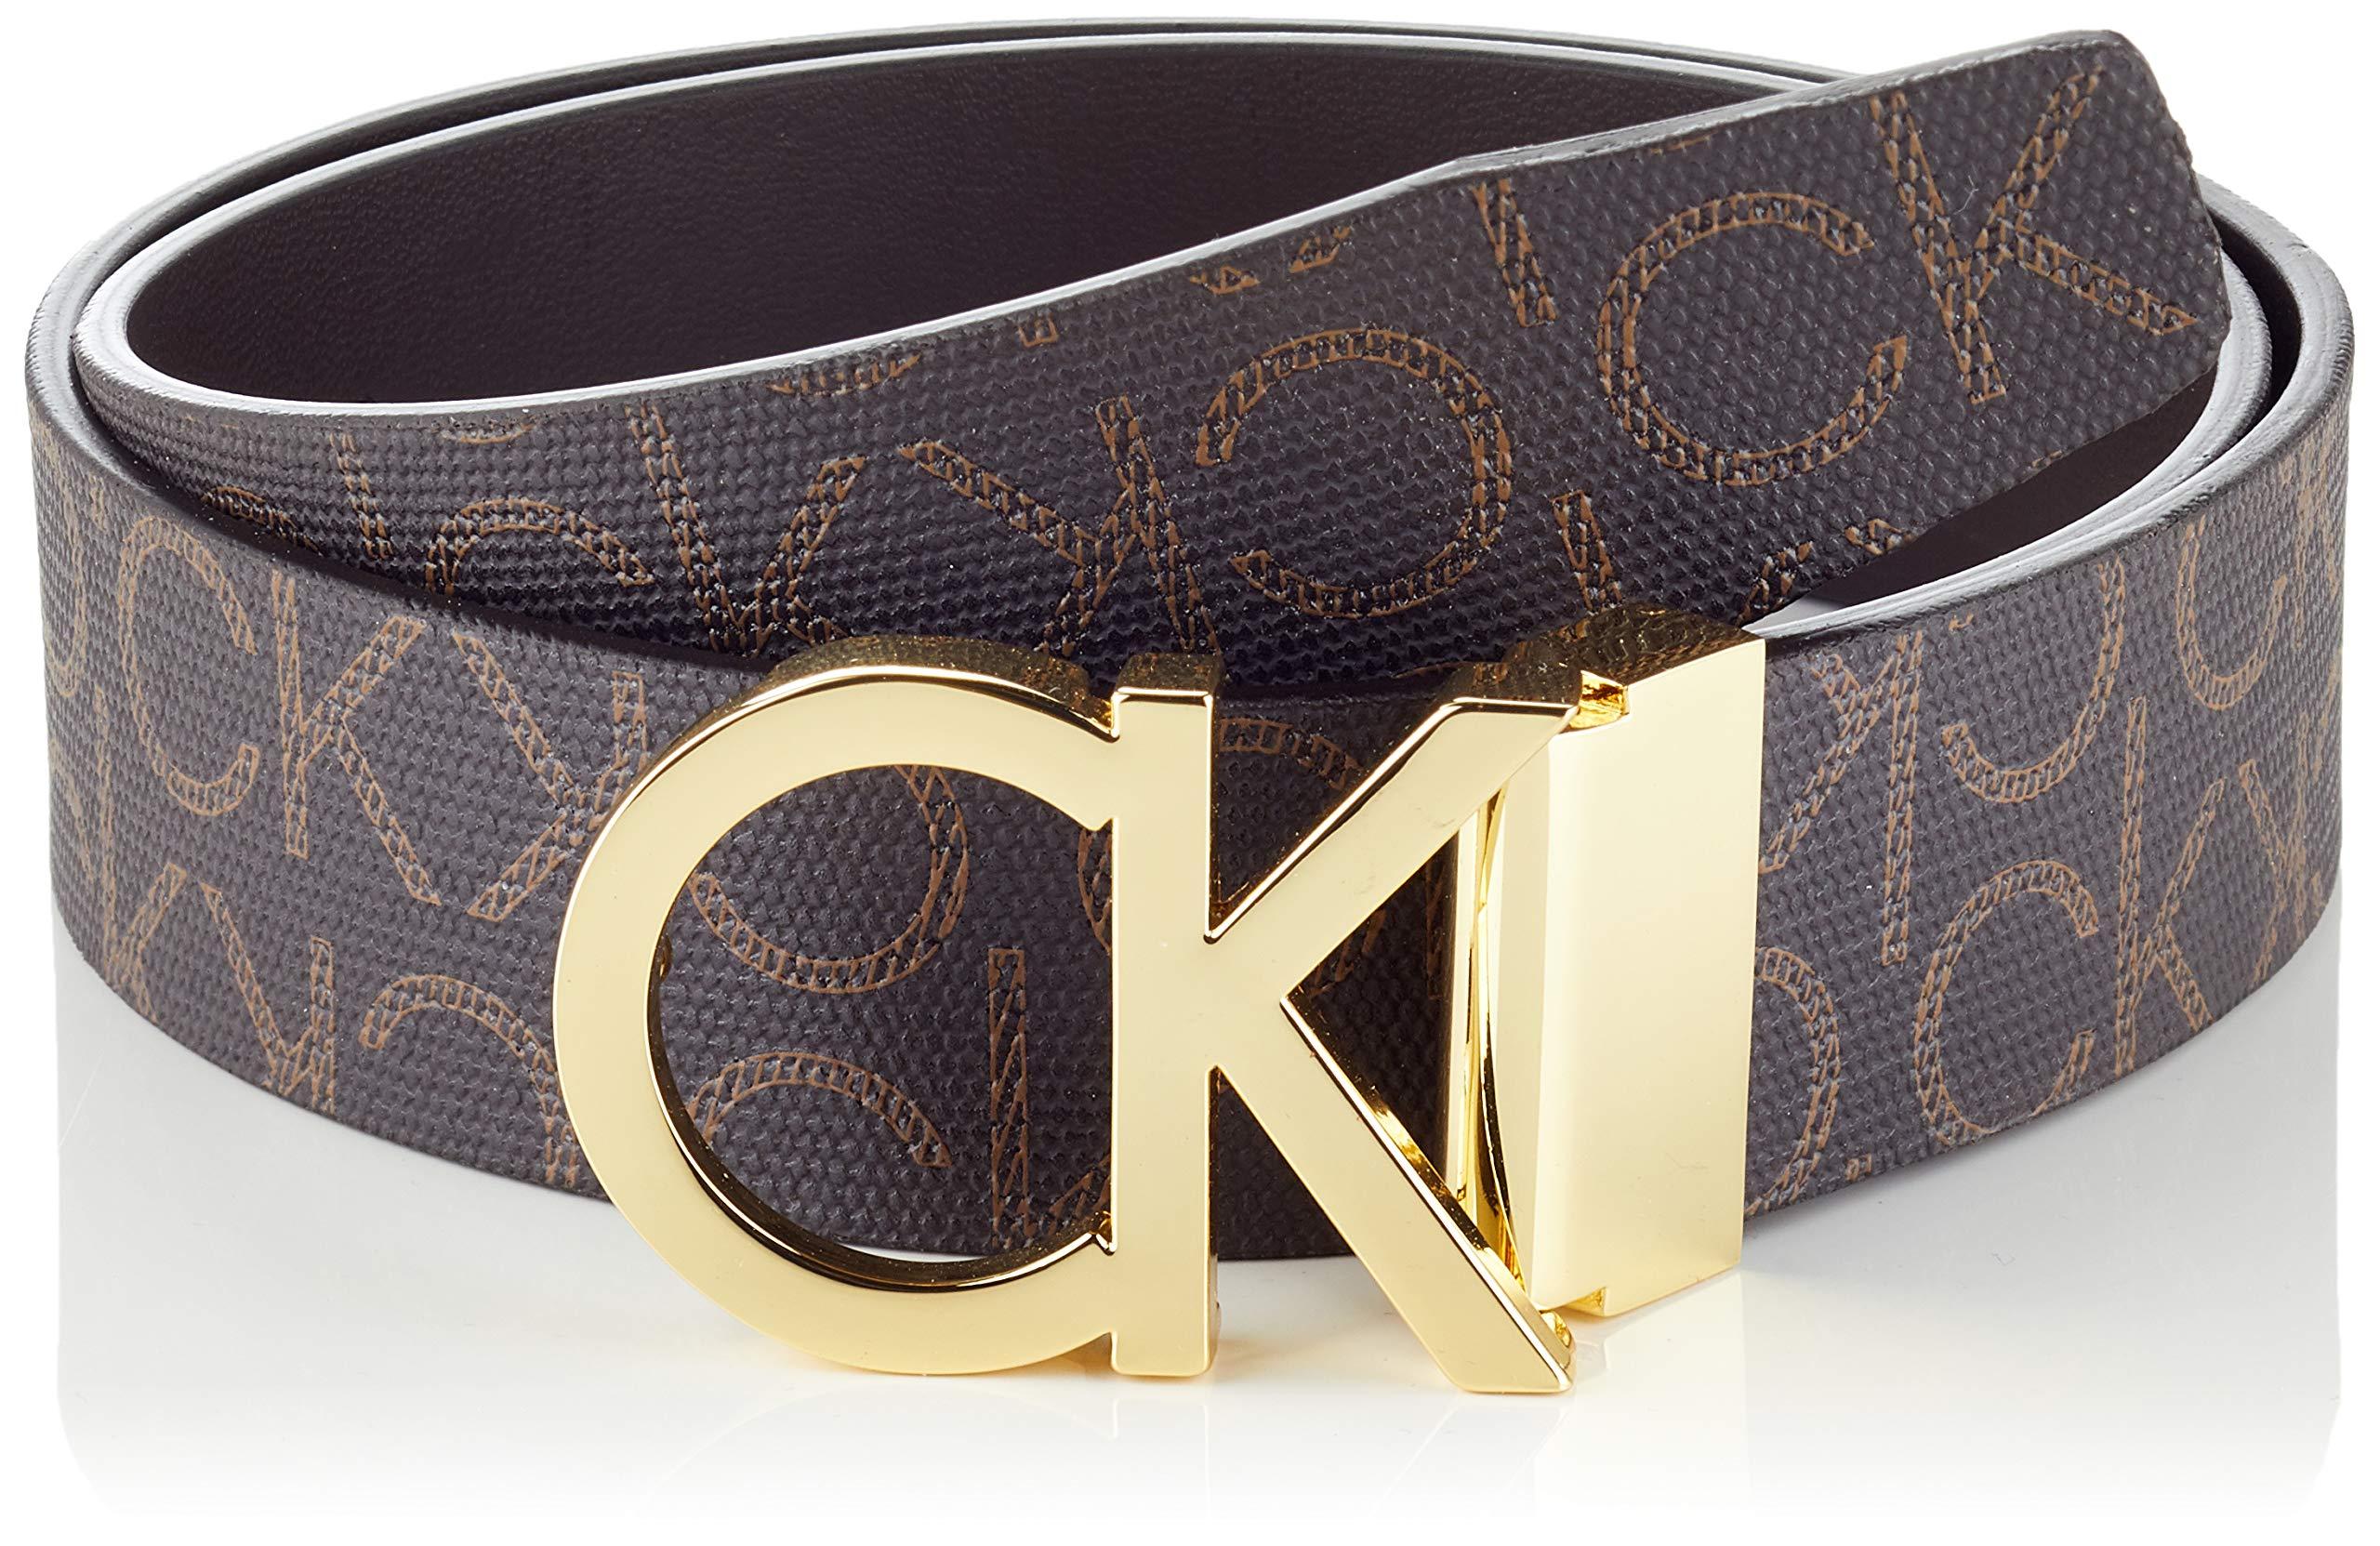  Calvin Klein Cinturón casual CK con hebilla recortada con  monograma para hombre, Marrón oscuro : Ropa, Zapatos y Joyería